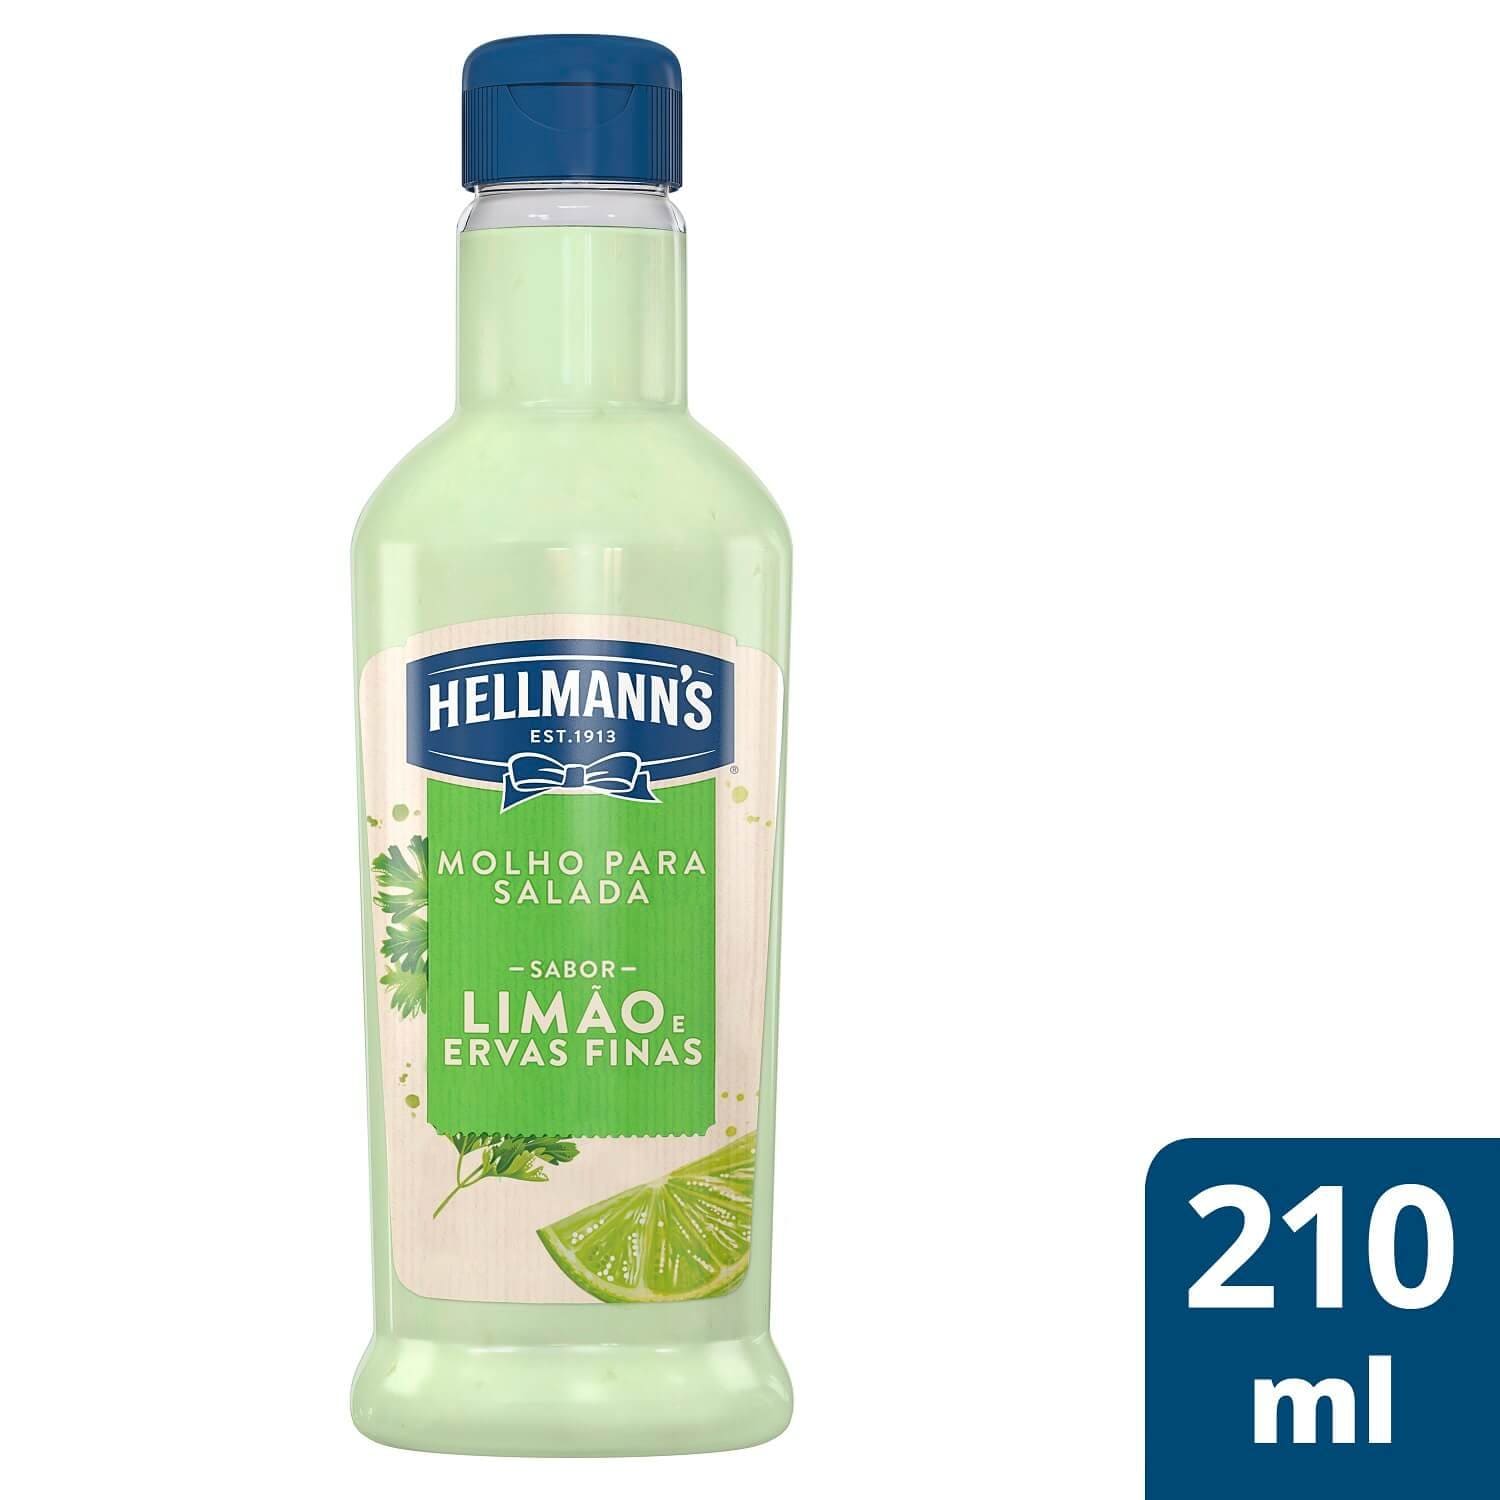 Molho para Salada Hellmann's Limão e Ervas Finas 210 ml - 